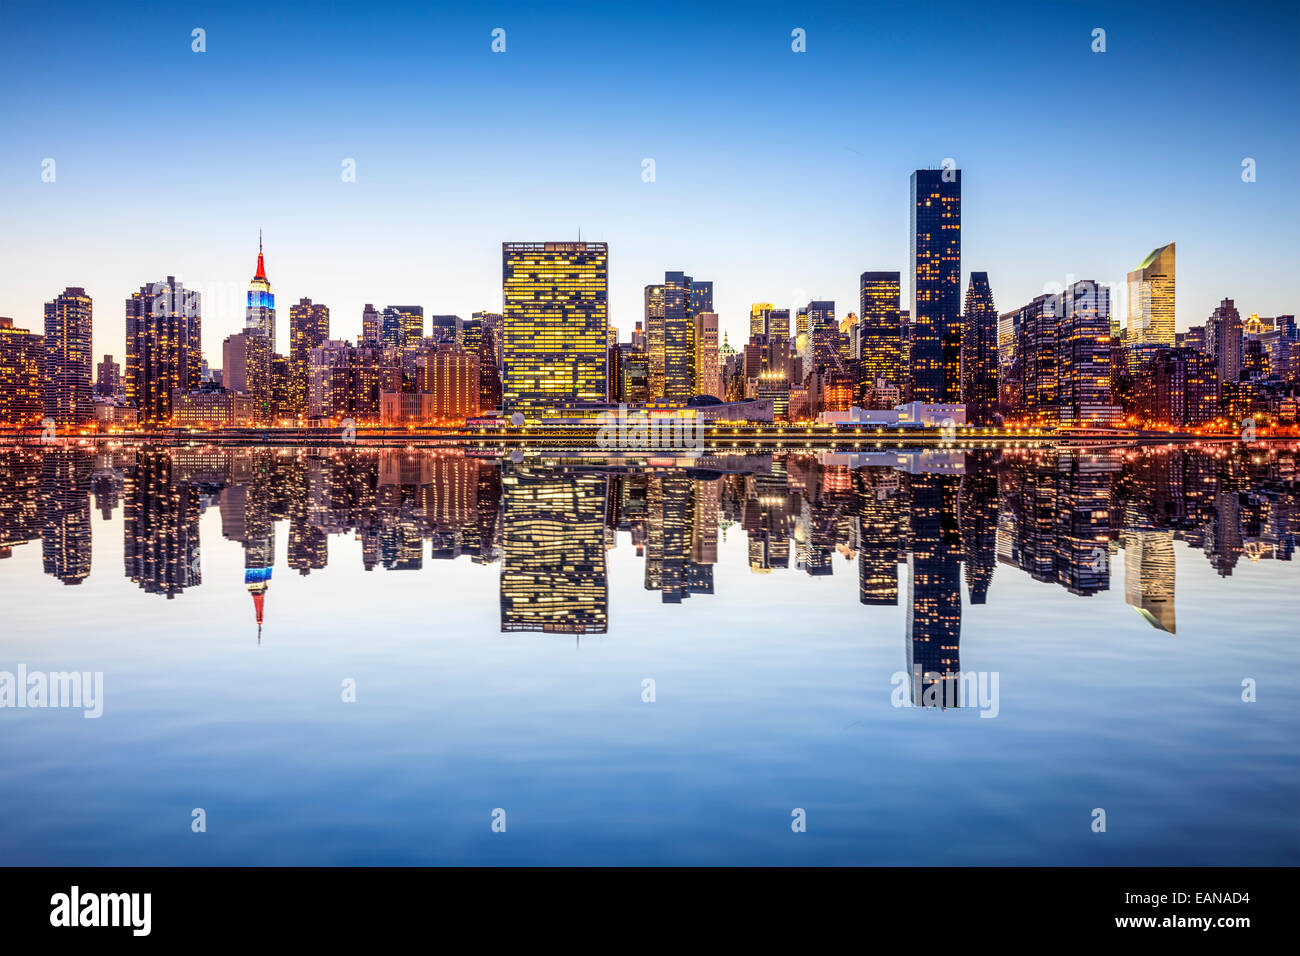 La ville de New York, USA city skyline de Manhattan à partir de l'autre côté de l'East River. Banque D'Images